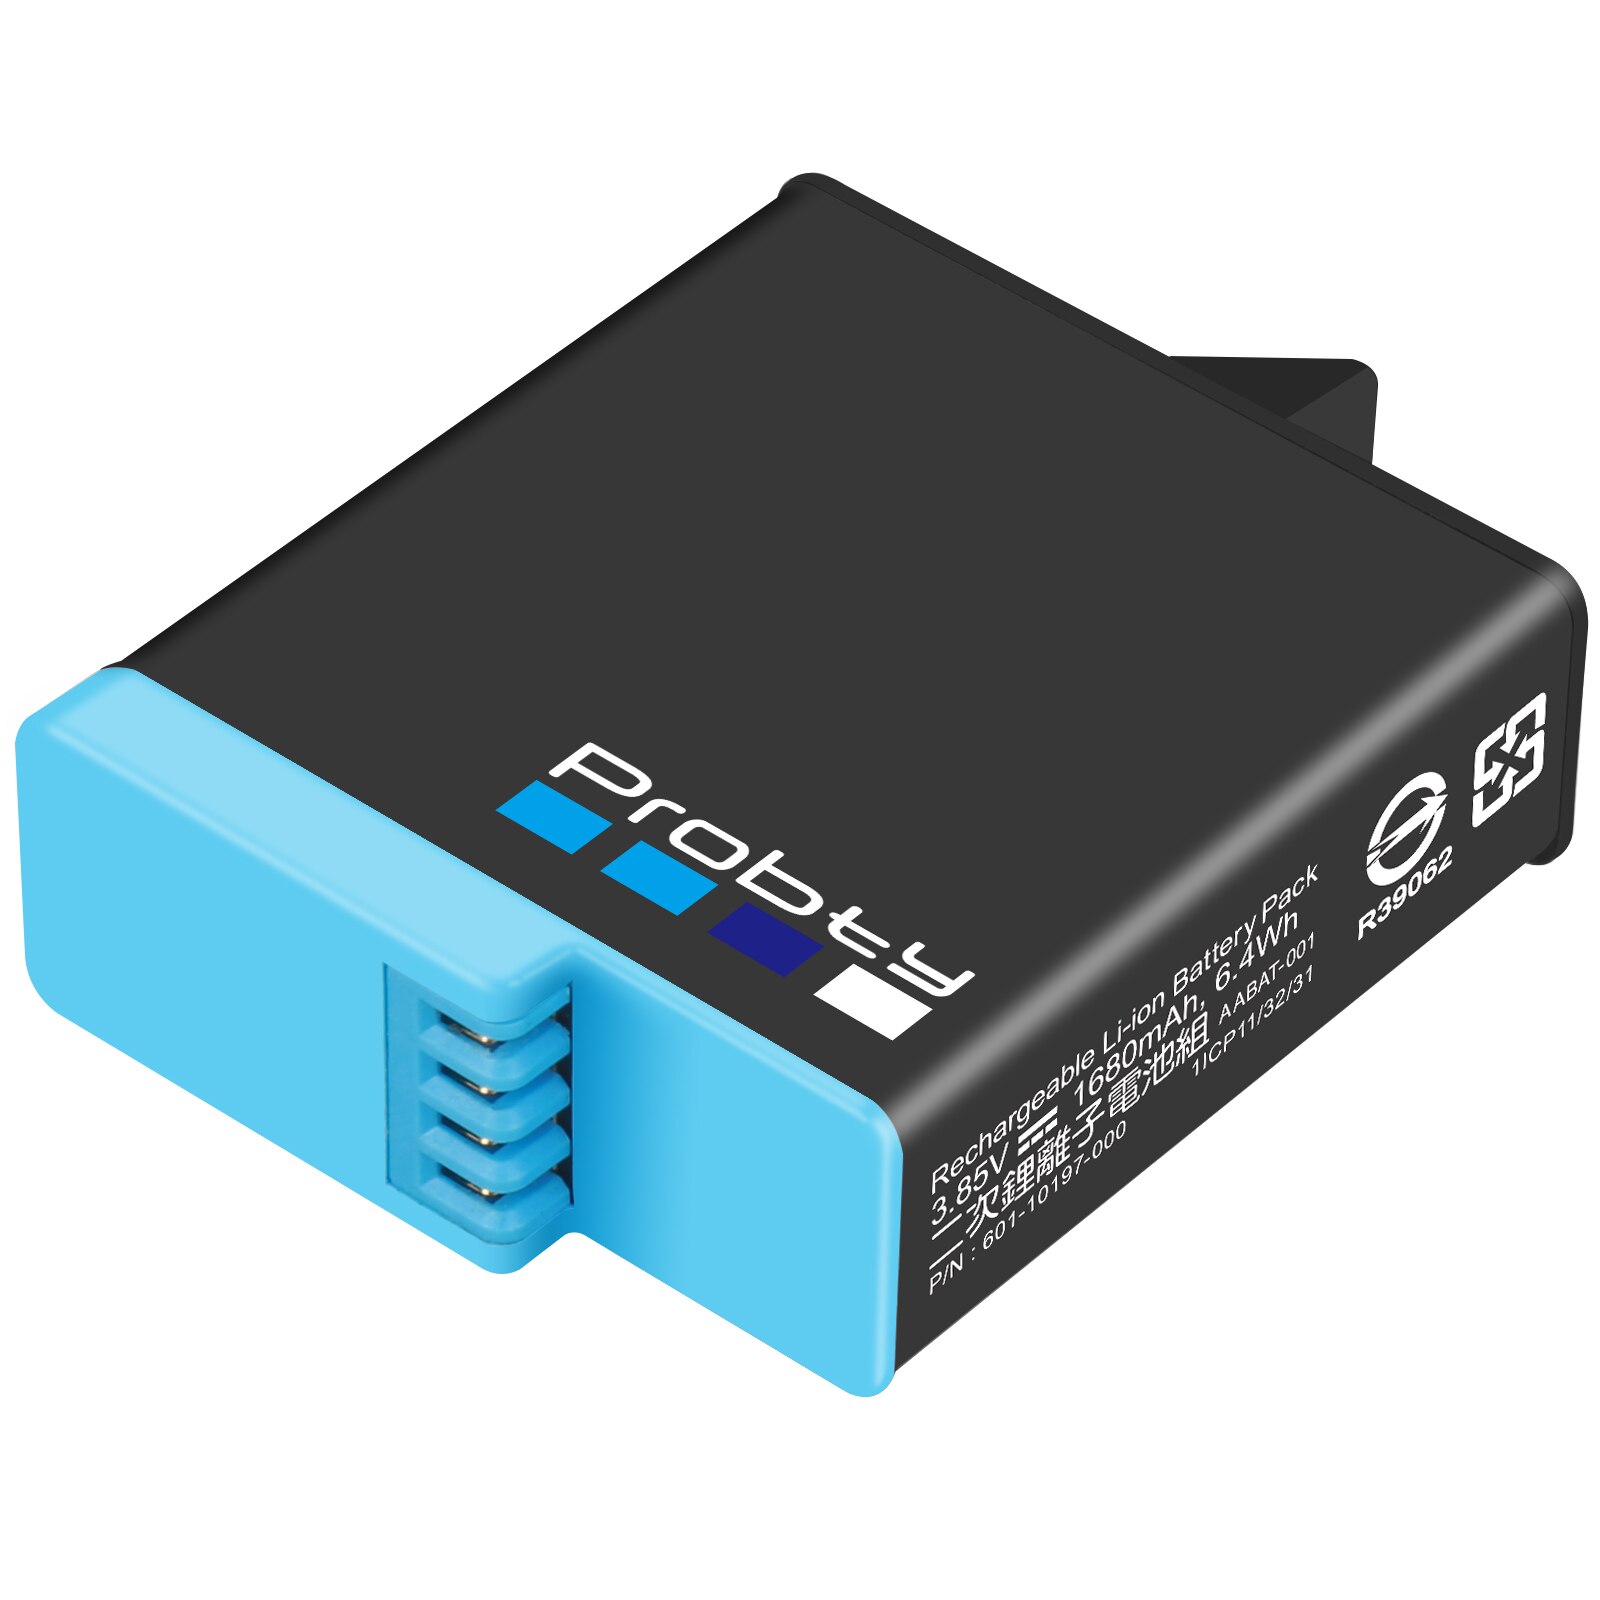 Probty 1680 mah hero 8 batteri  +3 slots lcd batterioplader usb-kabel til gopro hero 6 7 8 kamera tilbehør: 1 pc batterier